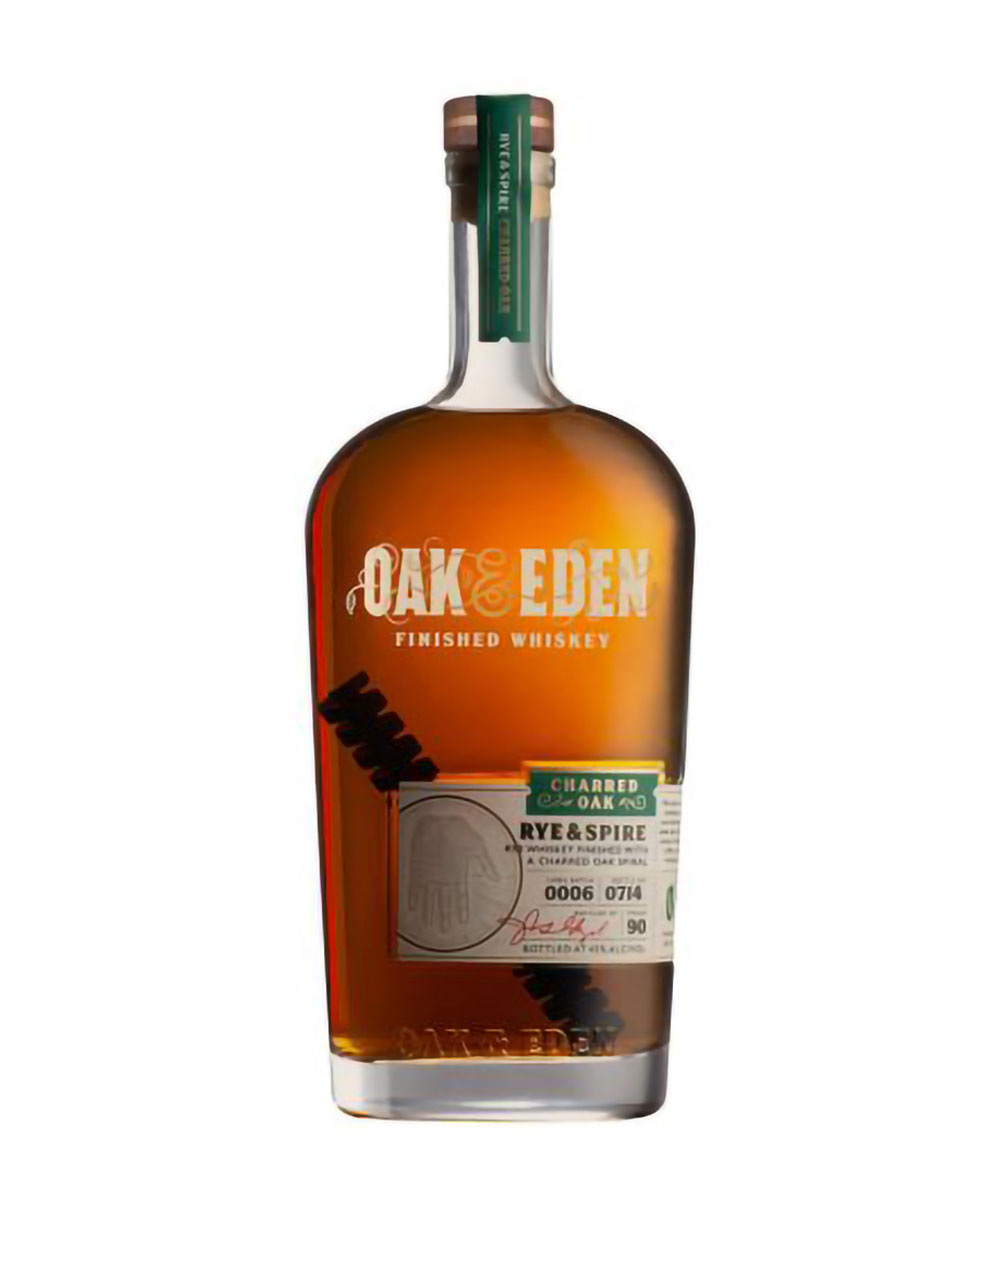 Acheter Peaky Blinder Irish Whiskey » Whisky irlandais » Spirits